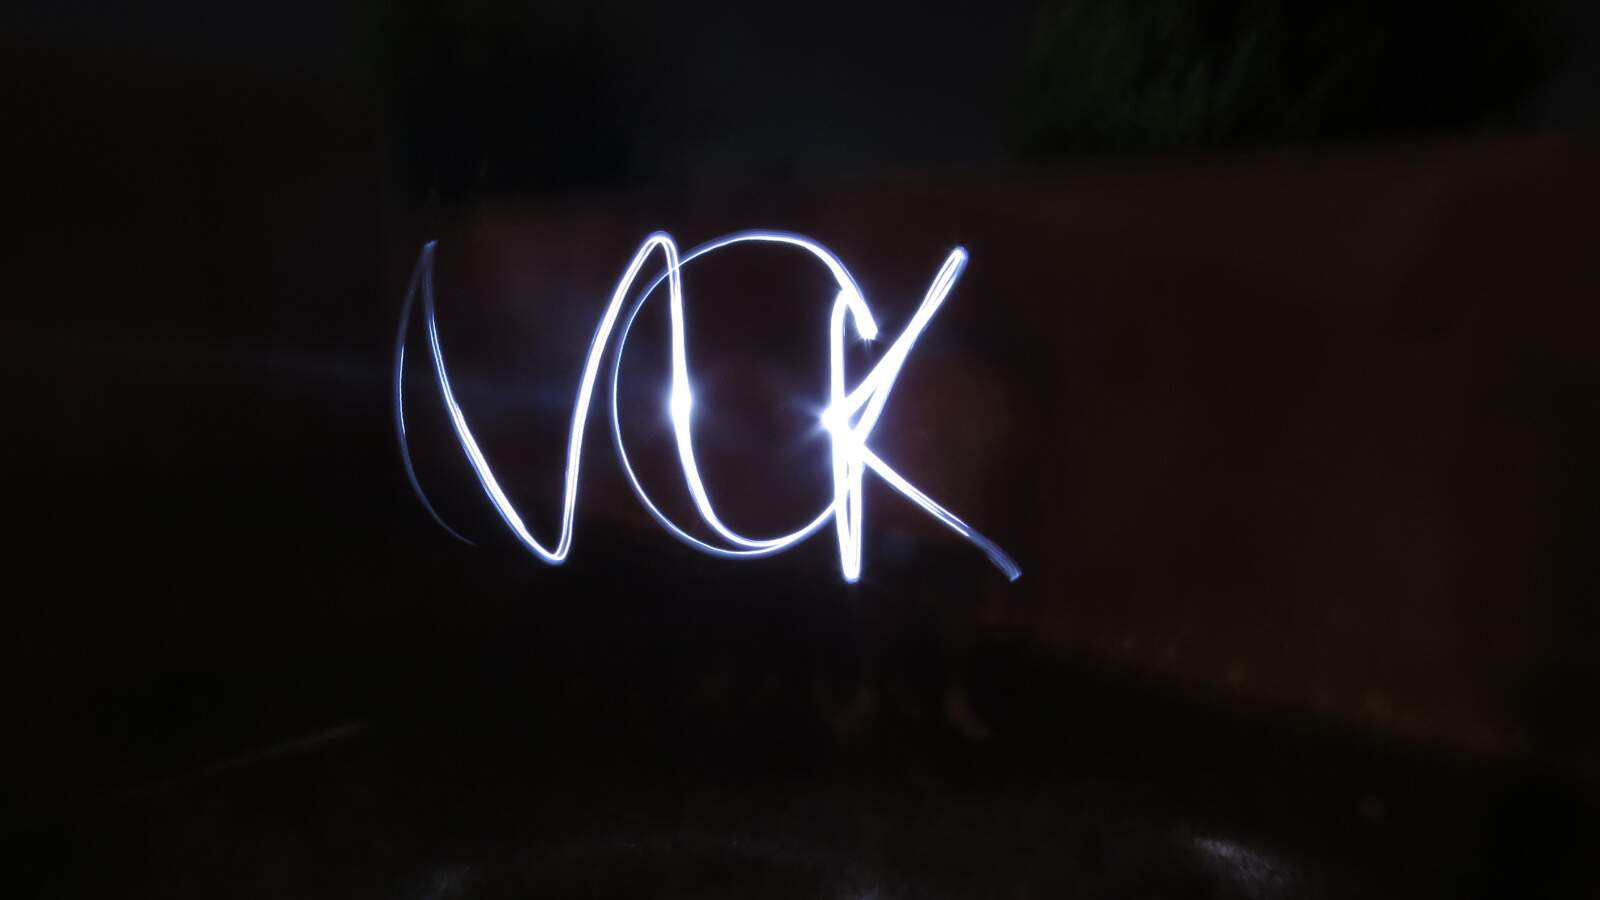 Fundo preto com o escrito MCK em evidencia. A sigla a luz foi captada pela técnica da luz em movimento por meio de uma longa exposição fotográfica